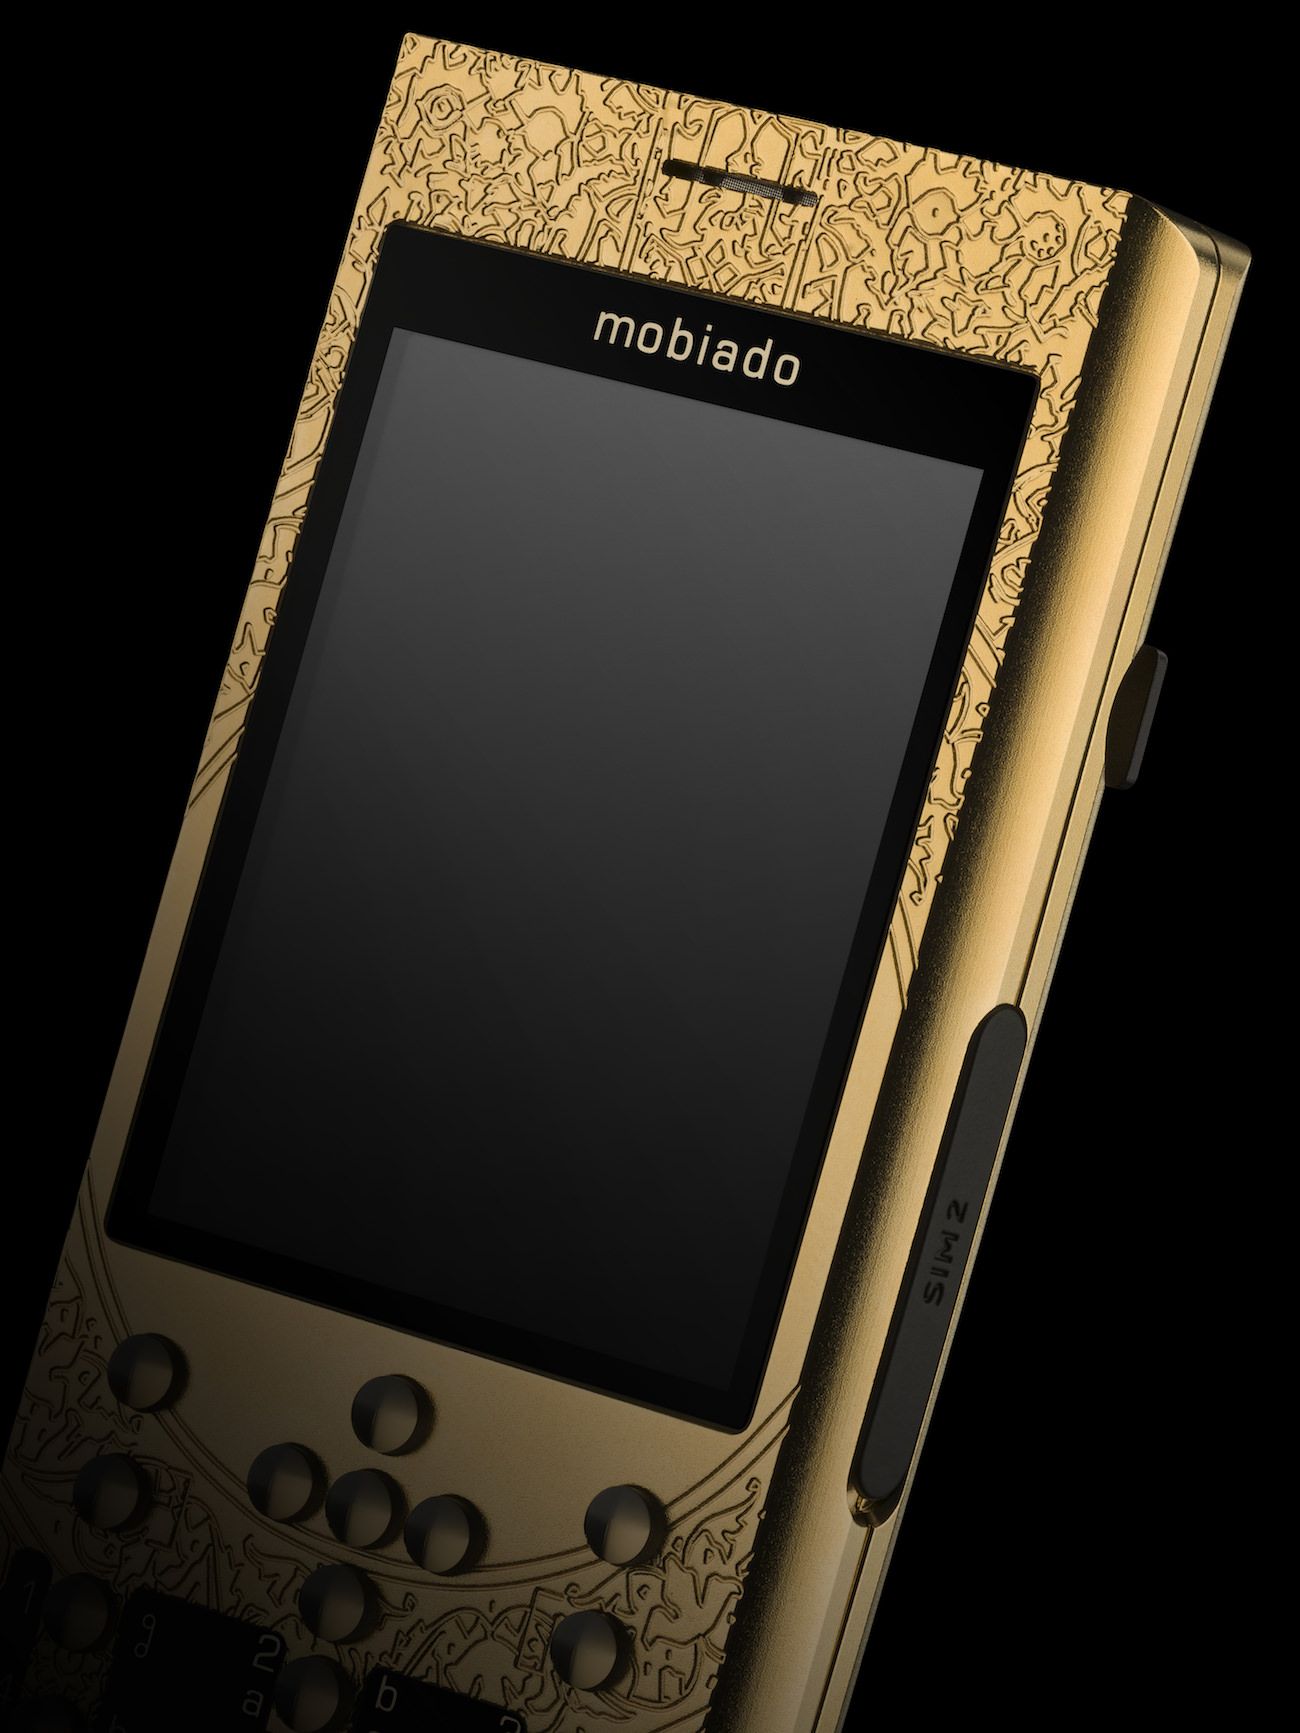 Купить телефон 0. Mobiado professional. Мобиадо 2000. Mobiado 712 Mop. Телефон сенсорный.